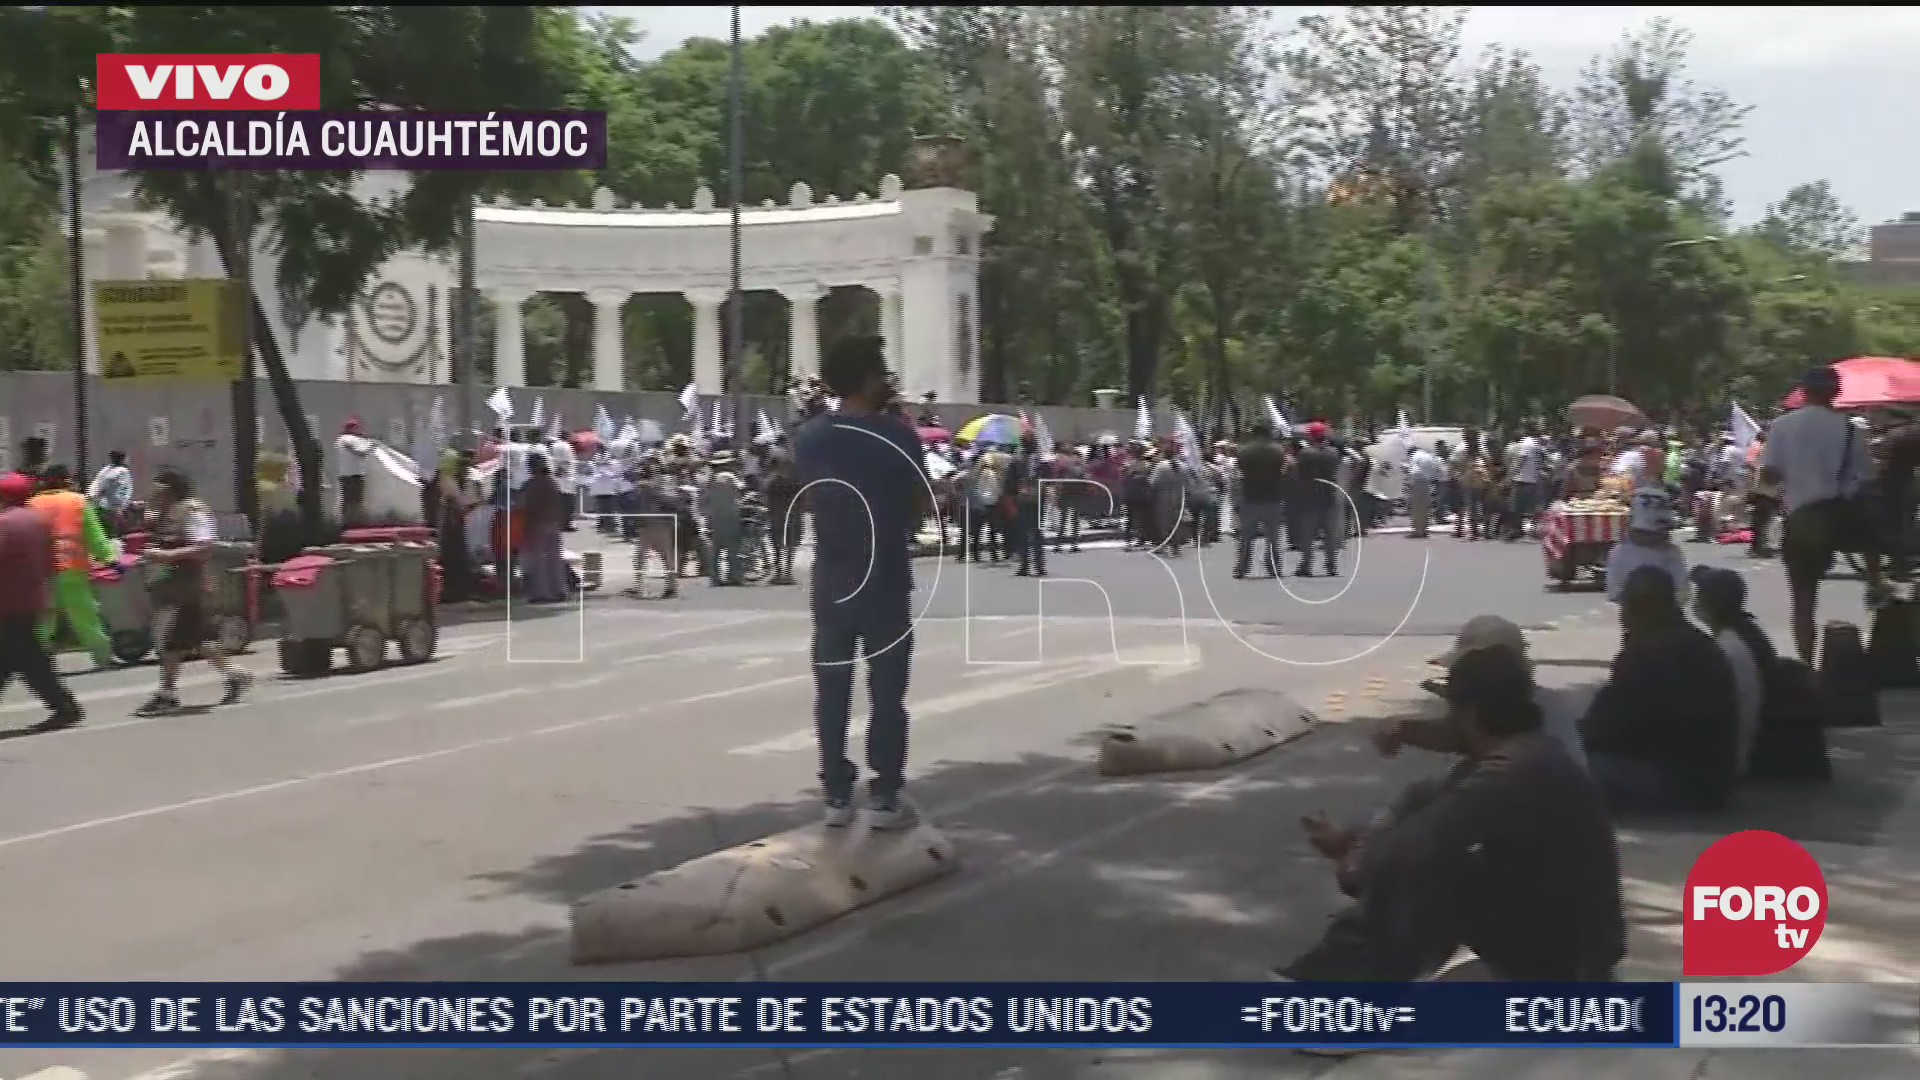 FOTO: 18 de julio 2020, movimiento obrero realiza bloqueo sobre av juarez